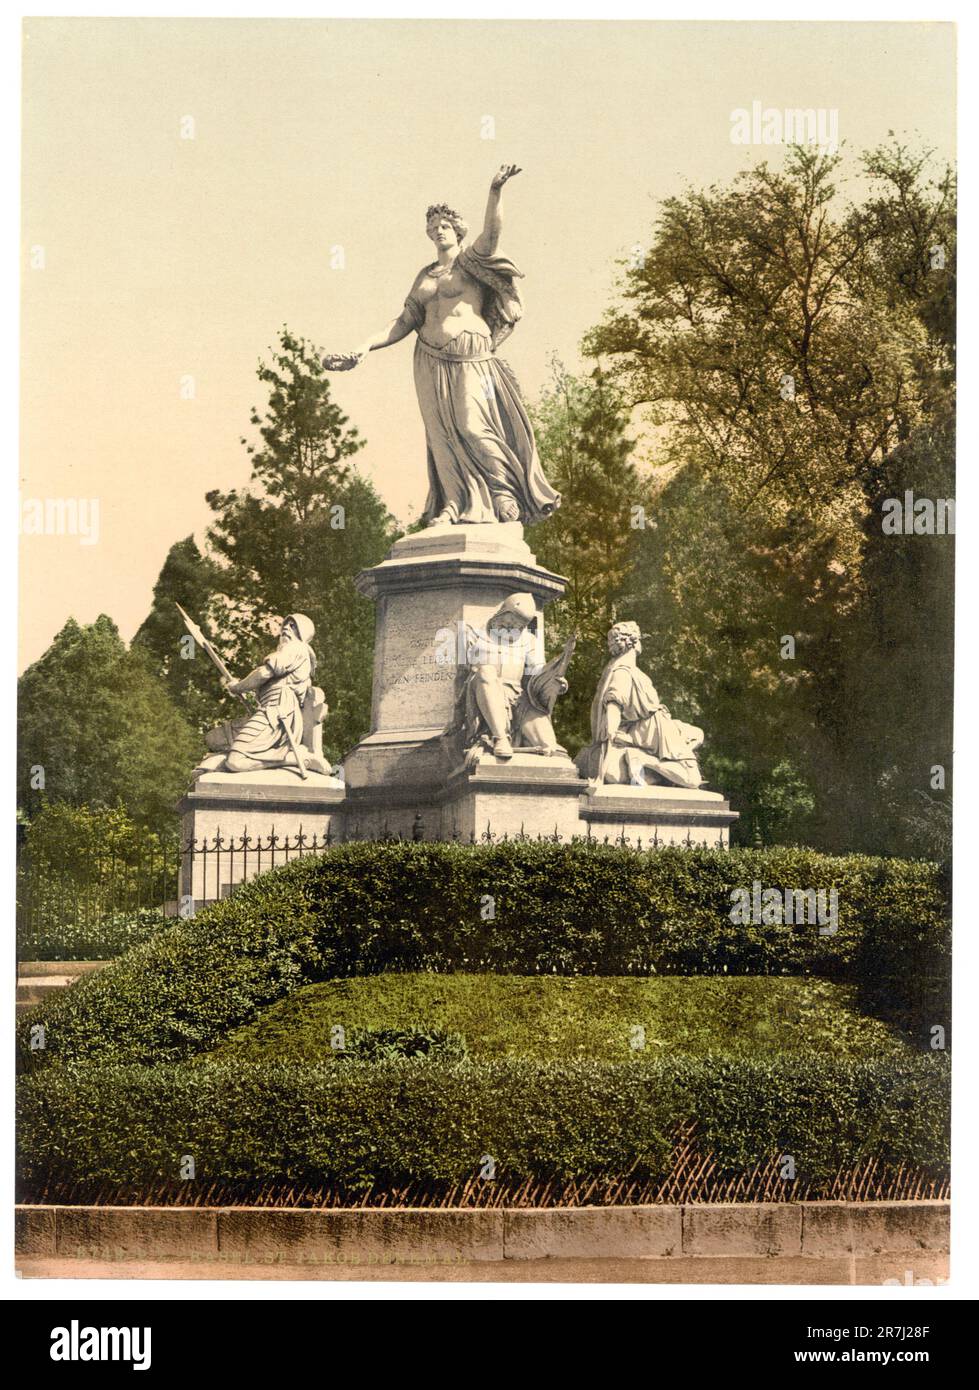 St. Jakobs-Denkmal Monument, Basel, Basel-Stadt, Switzerland 1890. Stock Photo